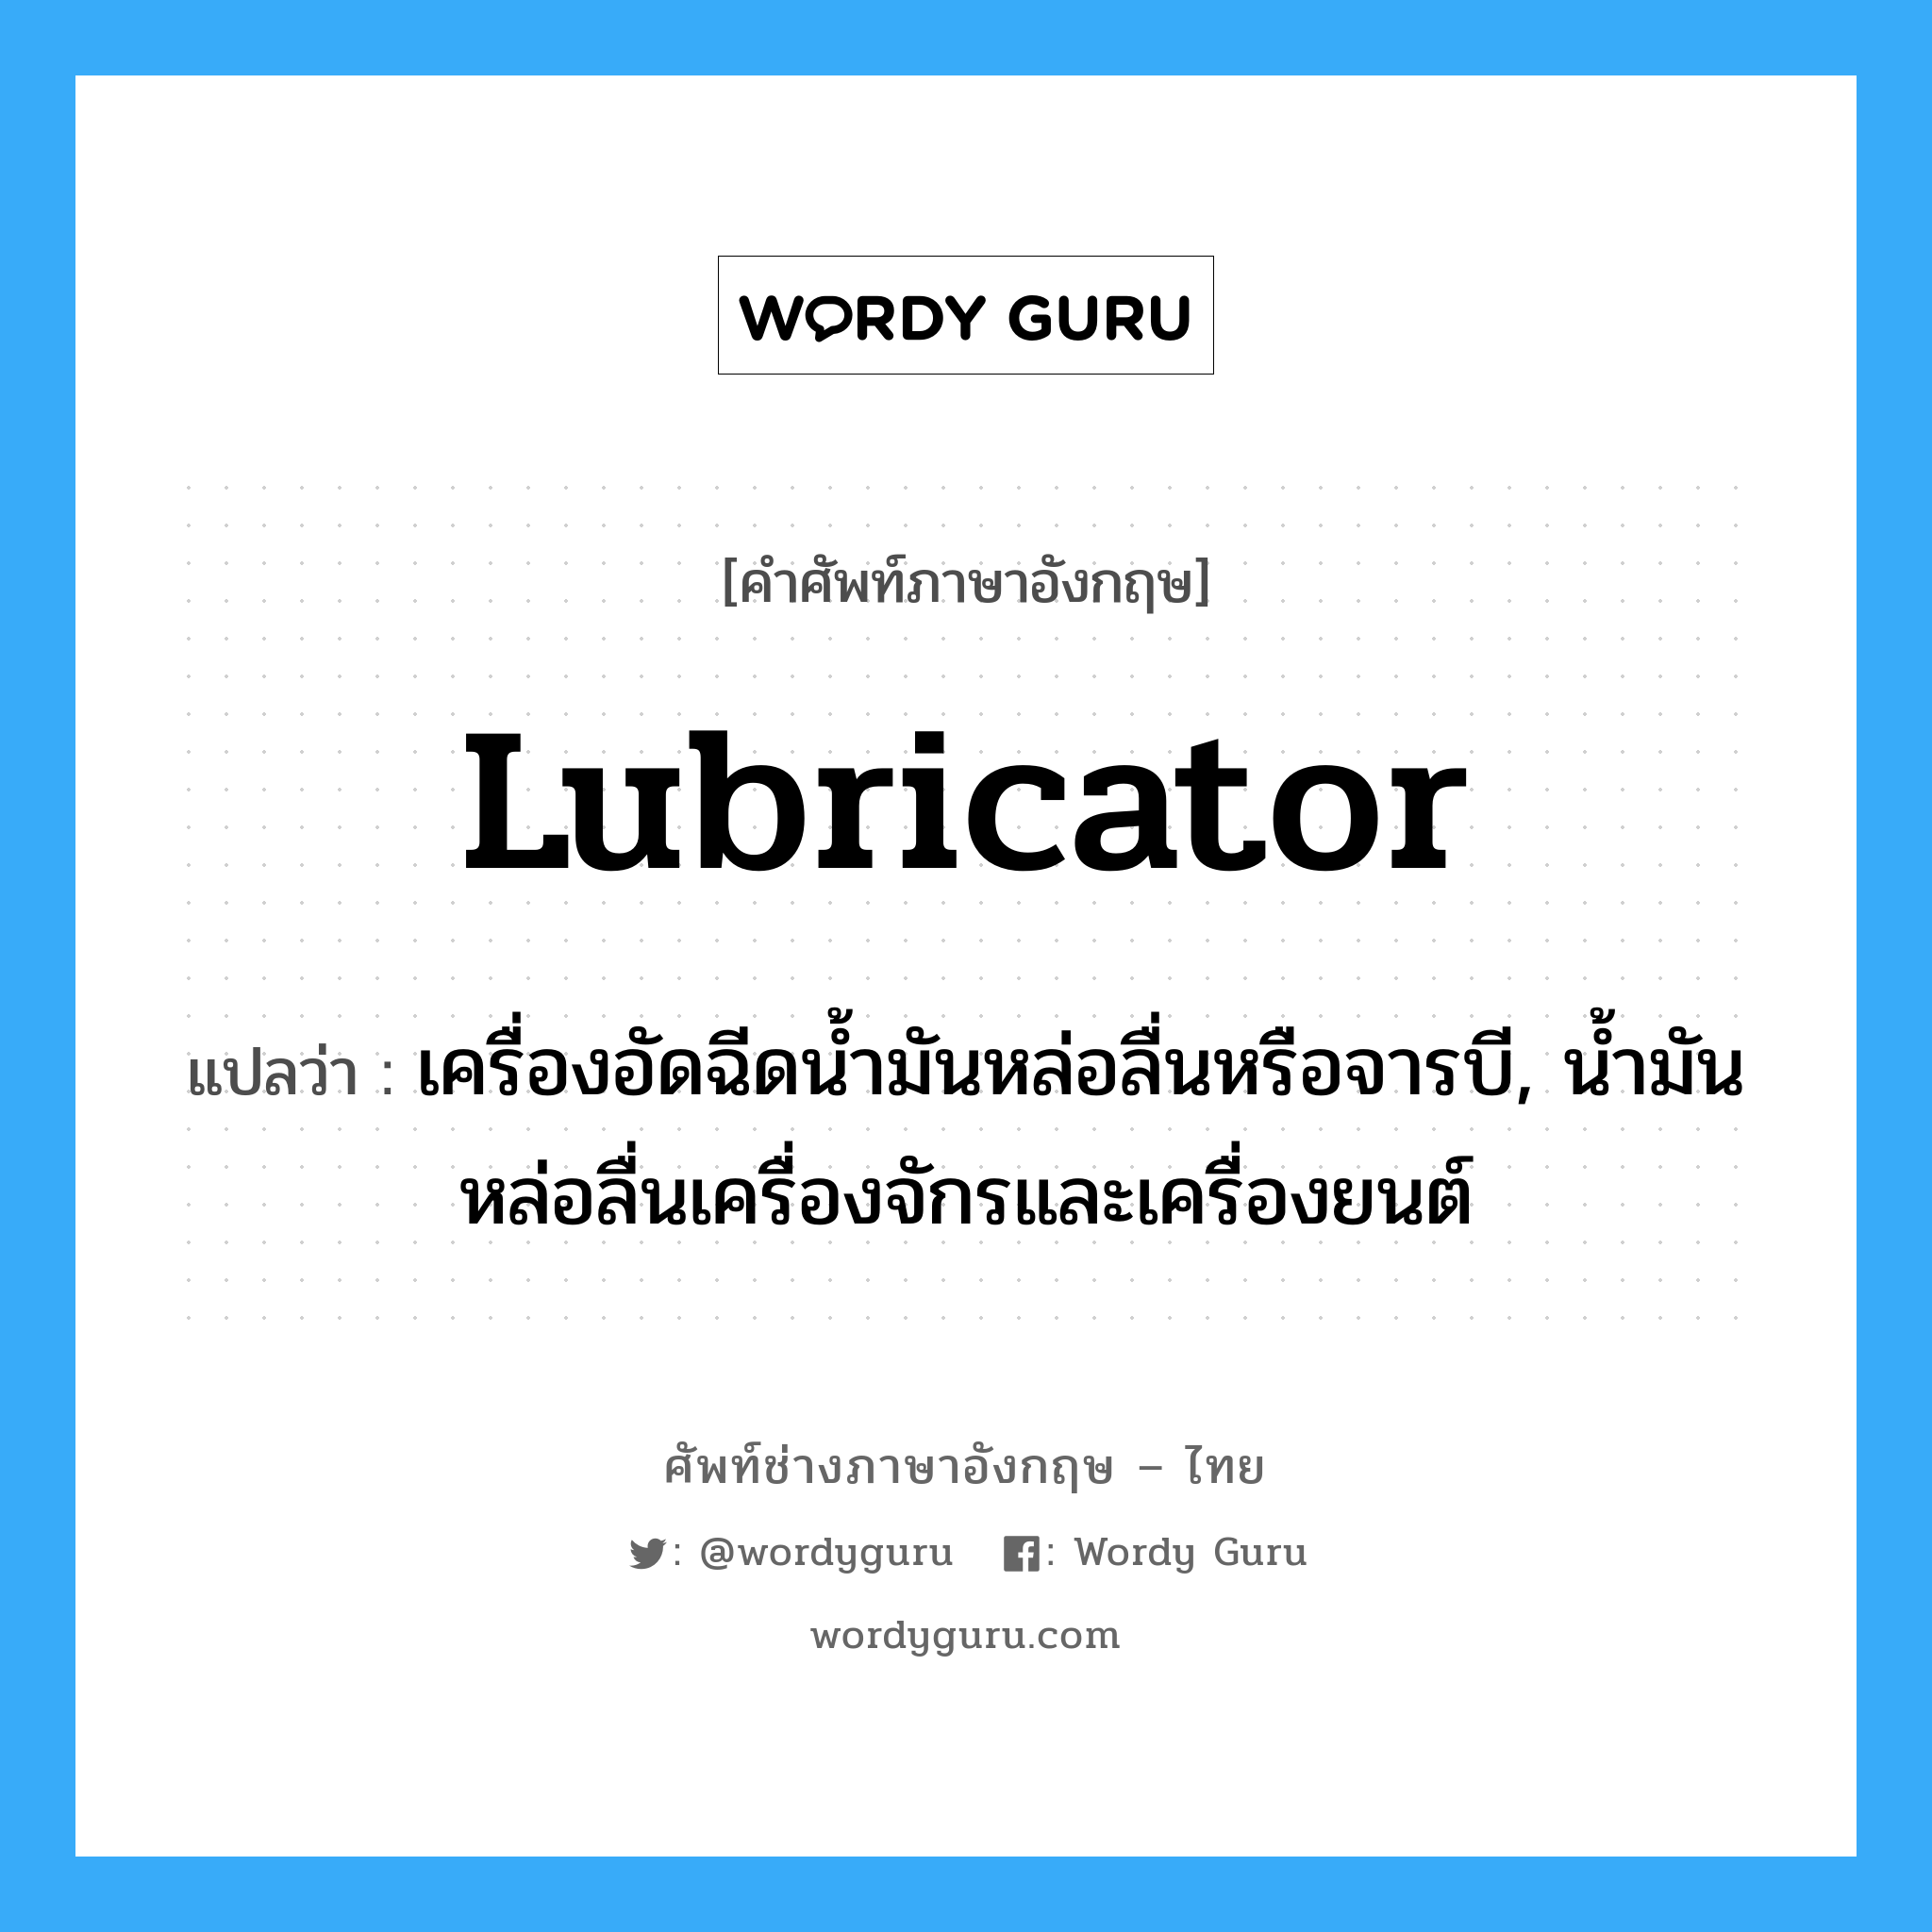 lubricator แปลว่า?, คำศัพท์ช่างภาษาอังกฤษ - ไทย lubricator คำศัพท์ภาษาอังกฤษ lubricator แปลว่า เครื่องอัดฉีดน้ำมันหล่อลื่นหรือจารบี, น้ำมันหล่อลื่นเครื่องจักรและเครื่องยนต์